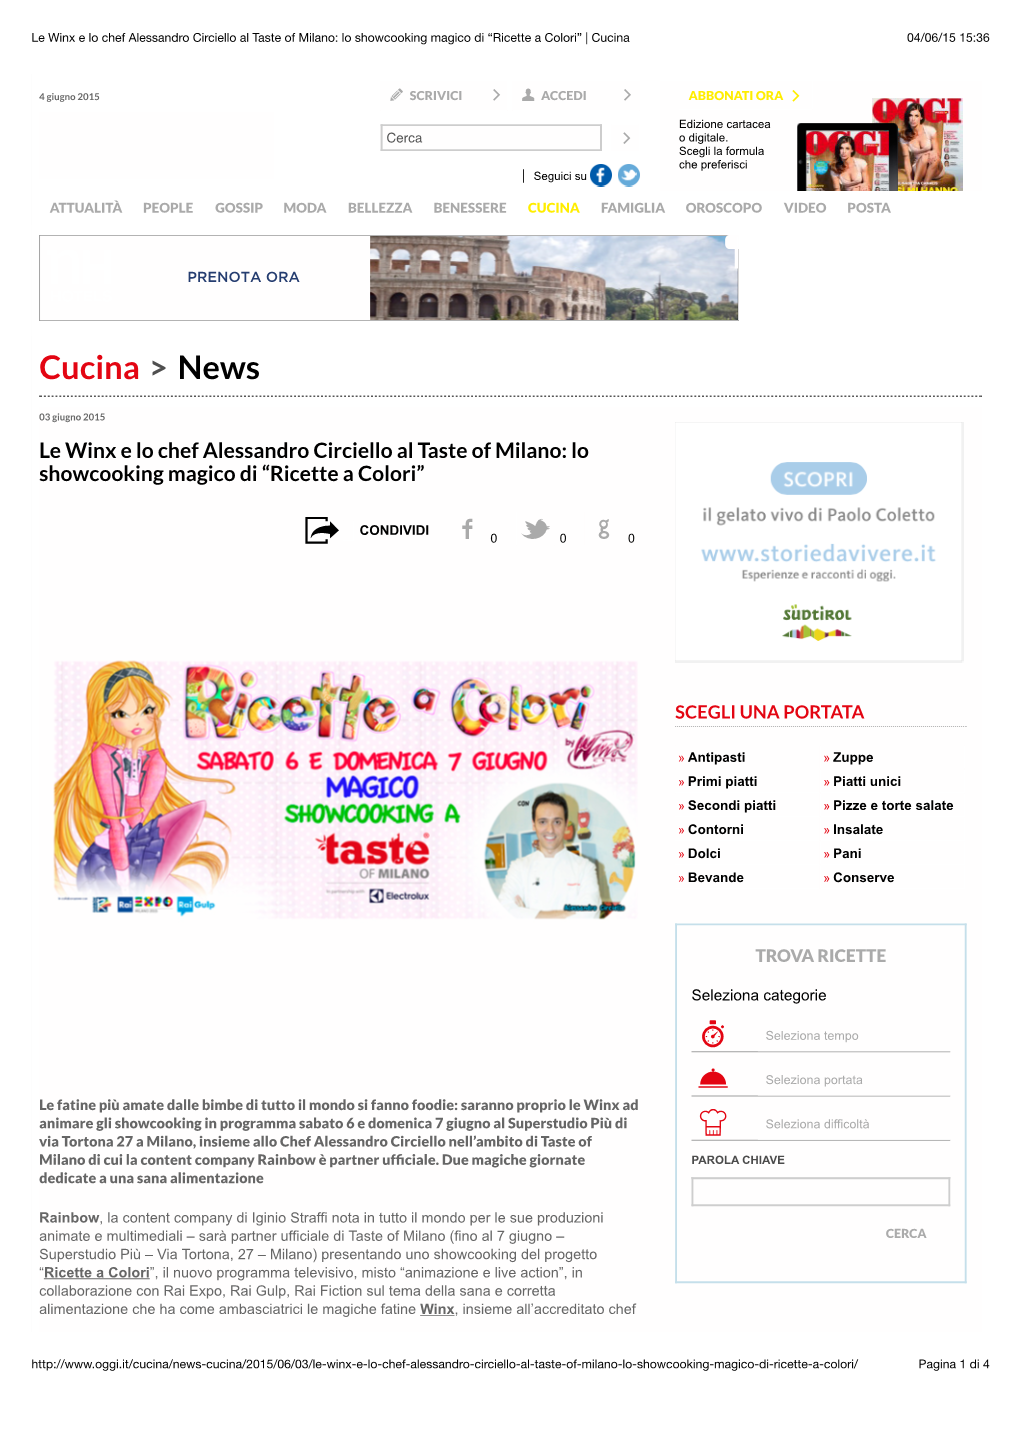 Le Winx E Lo Chef Alessandro Circiello Al Taste of Milano: Lo Showcooking Magico Di “Ricette a Colori” | Cucina 04/06/15 15:36